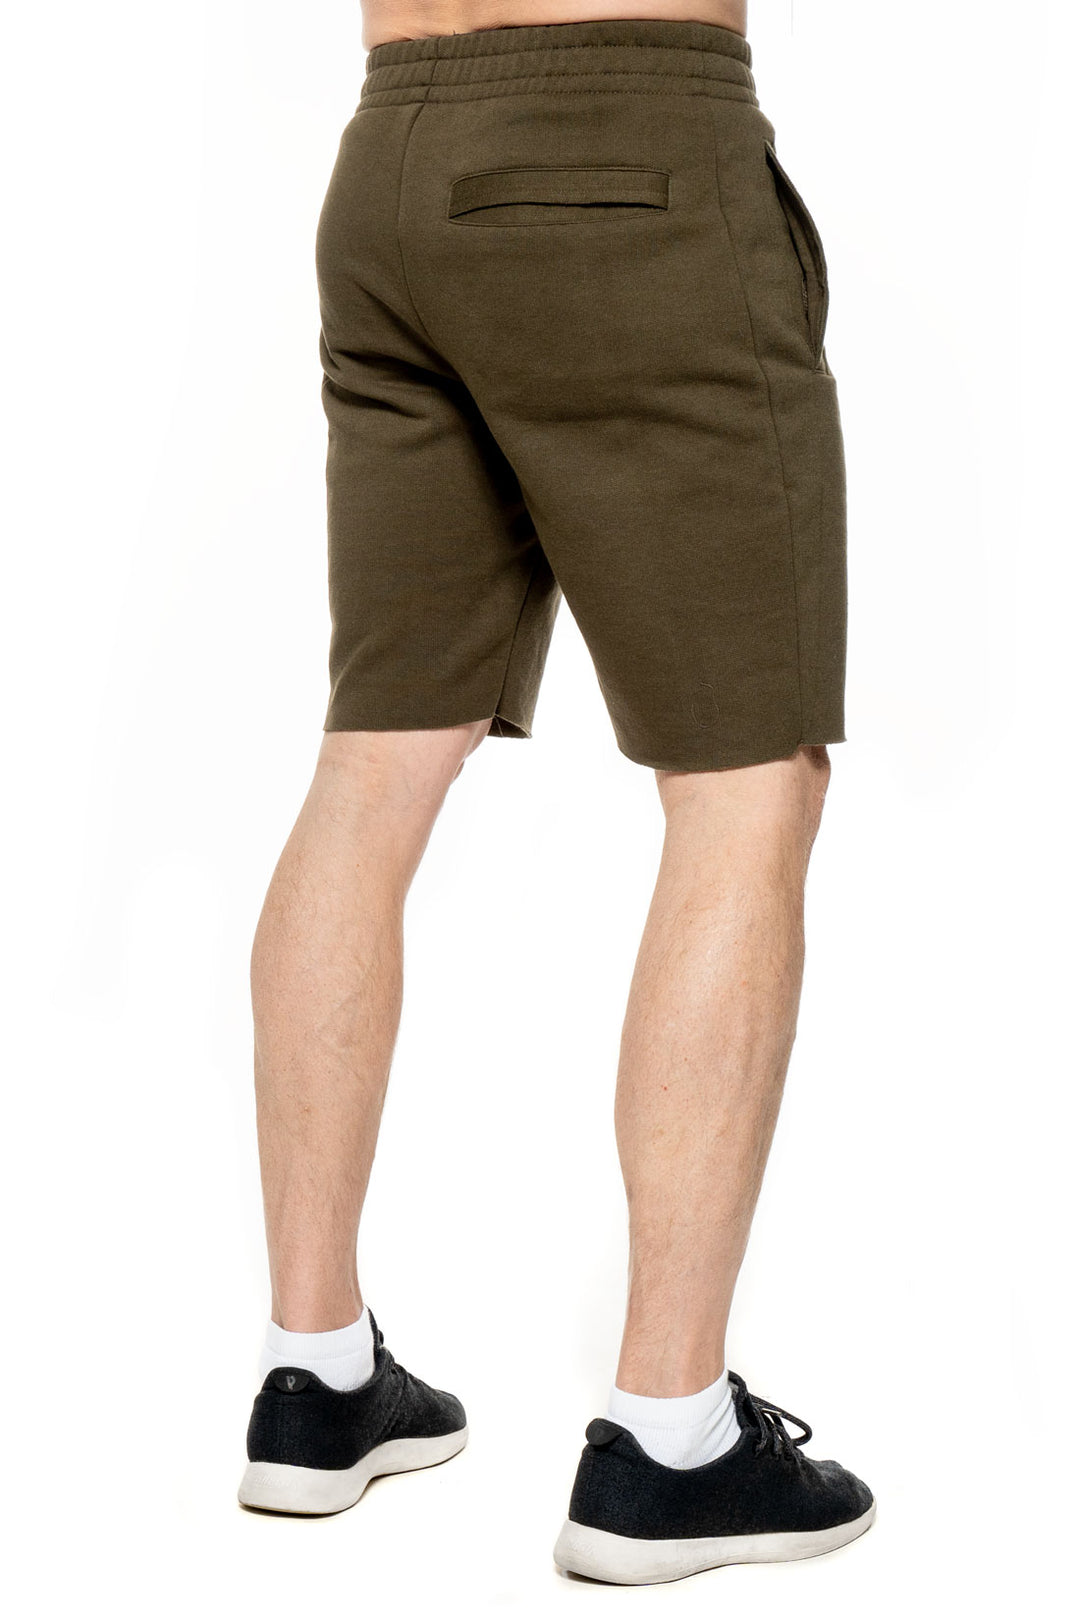 Men's Renegade Shorts